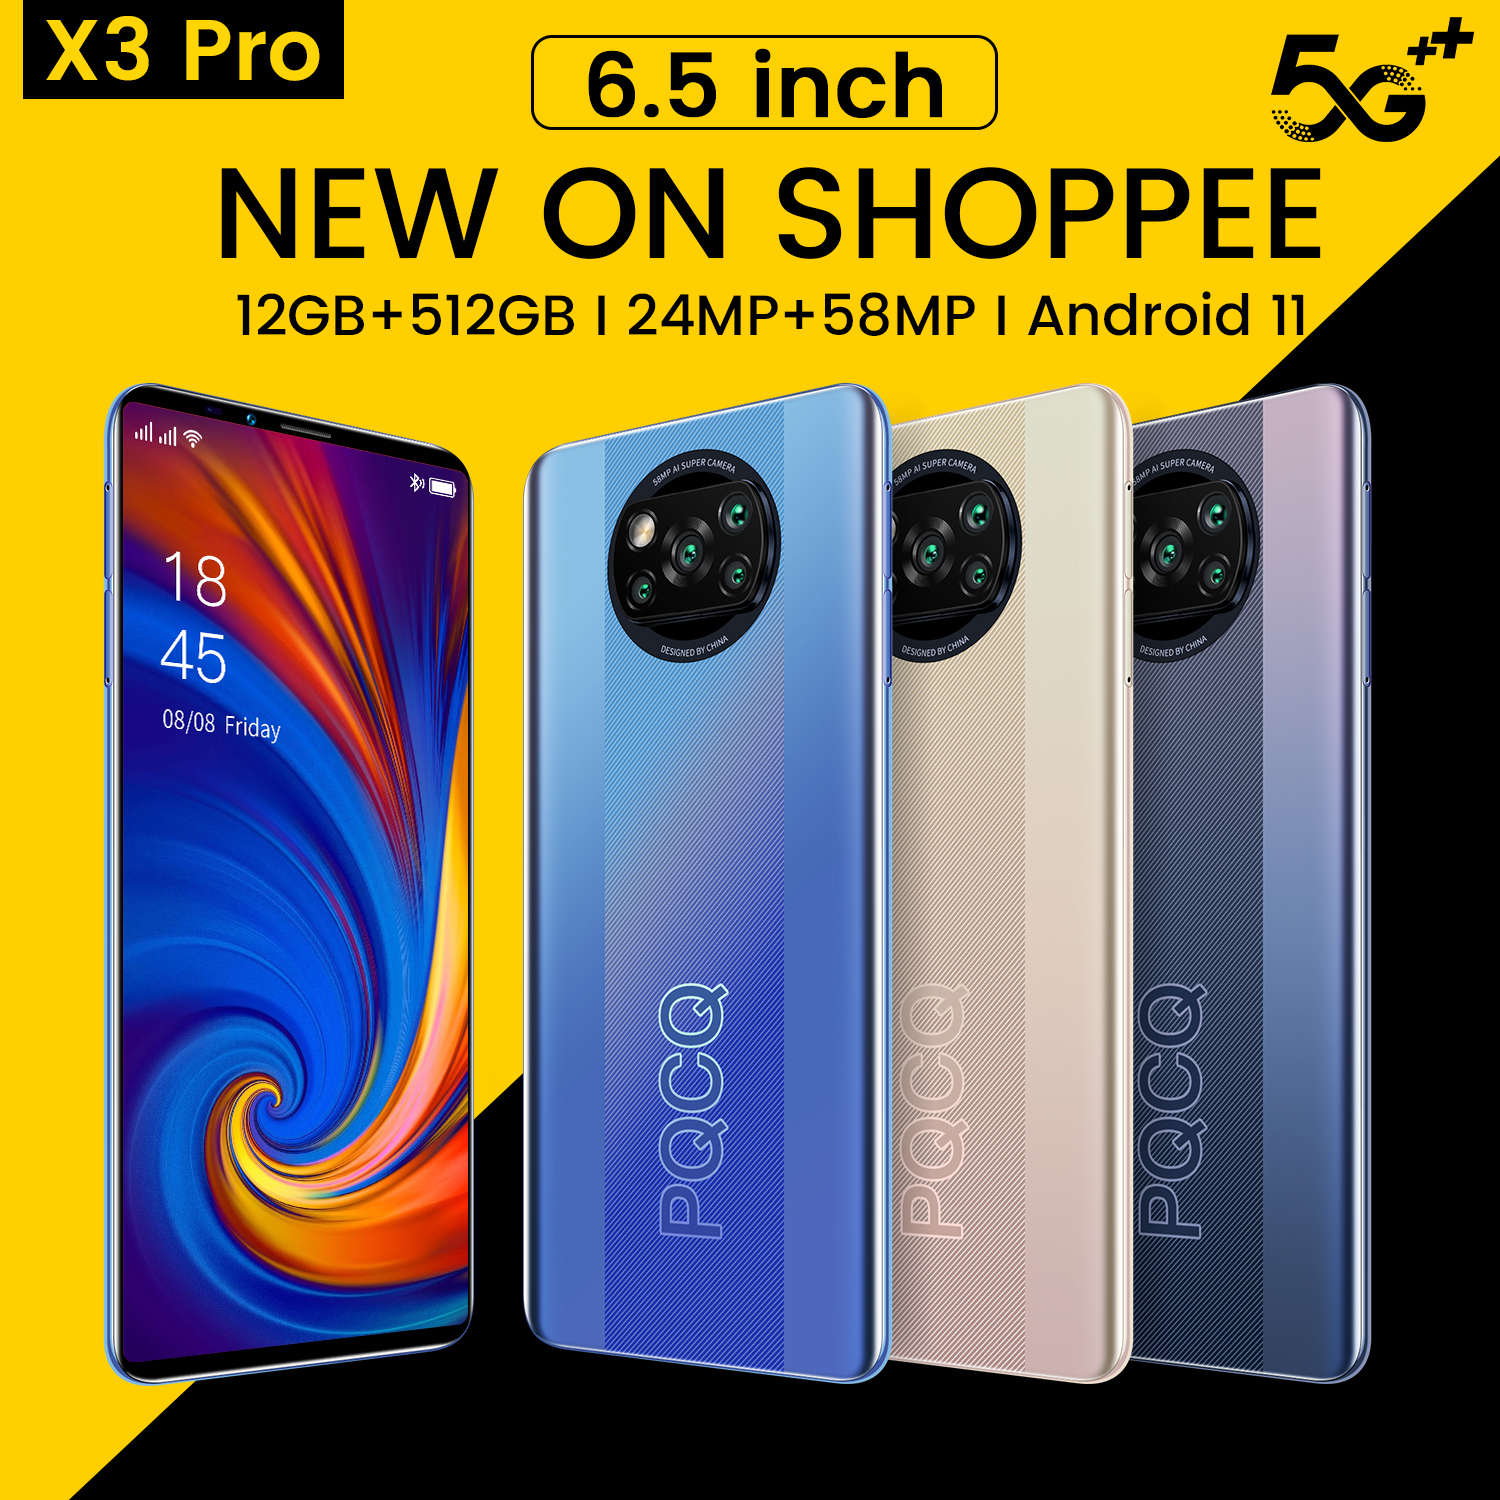 điênk thoại giá rẻ X3 Pro Điện thoại di động 6.5inch dien thoai giá rẻ